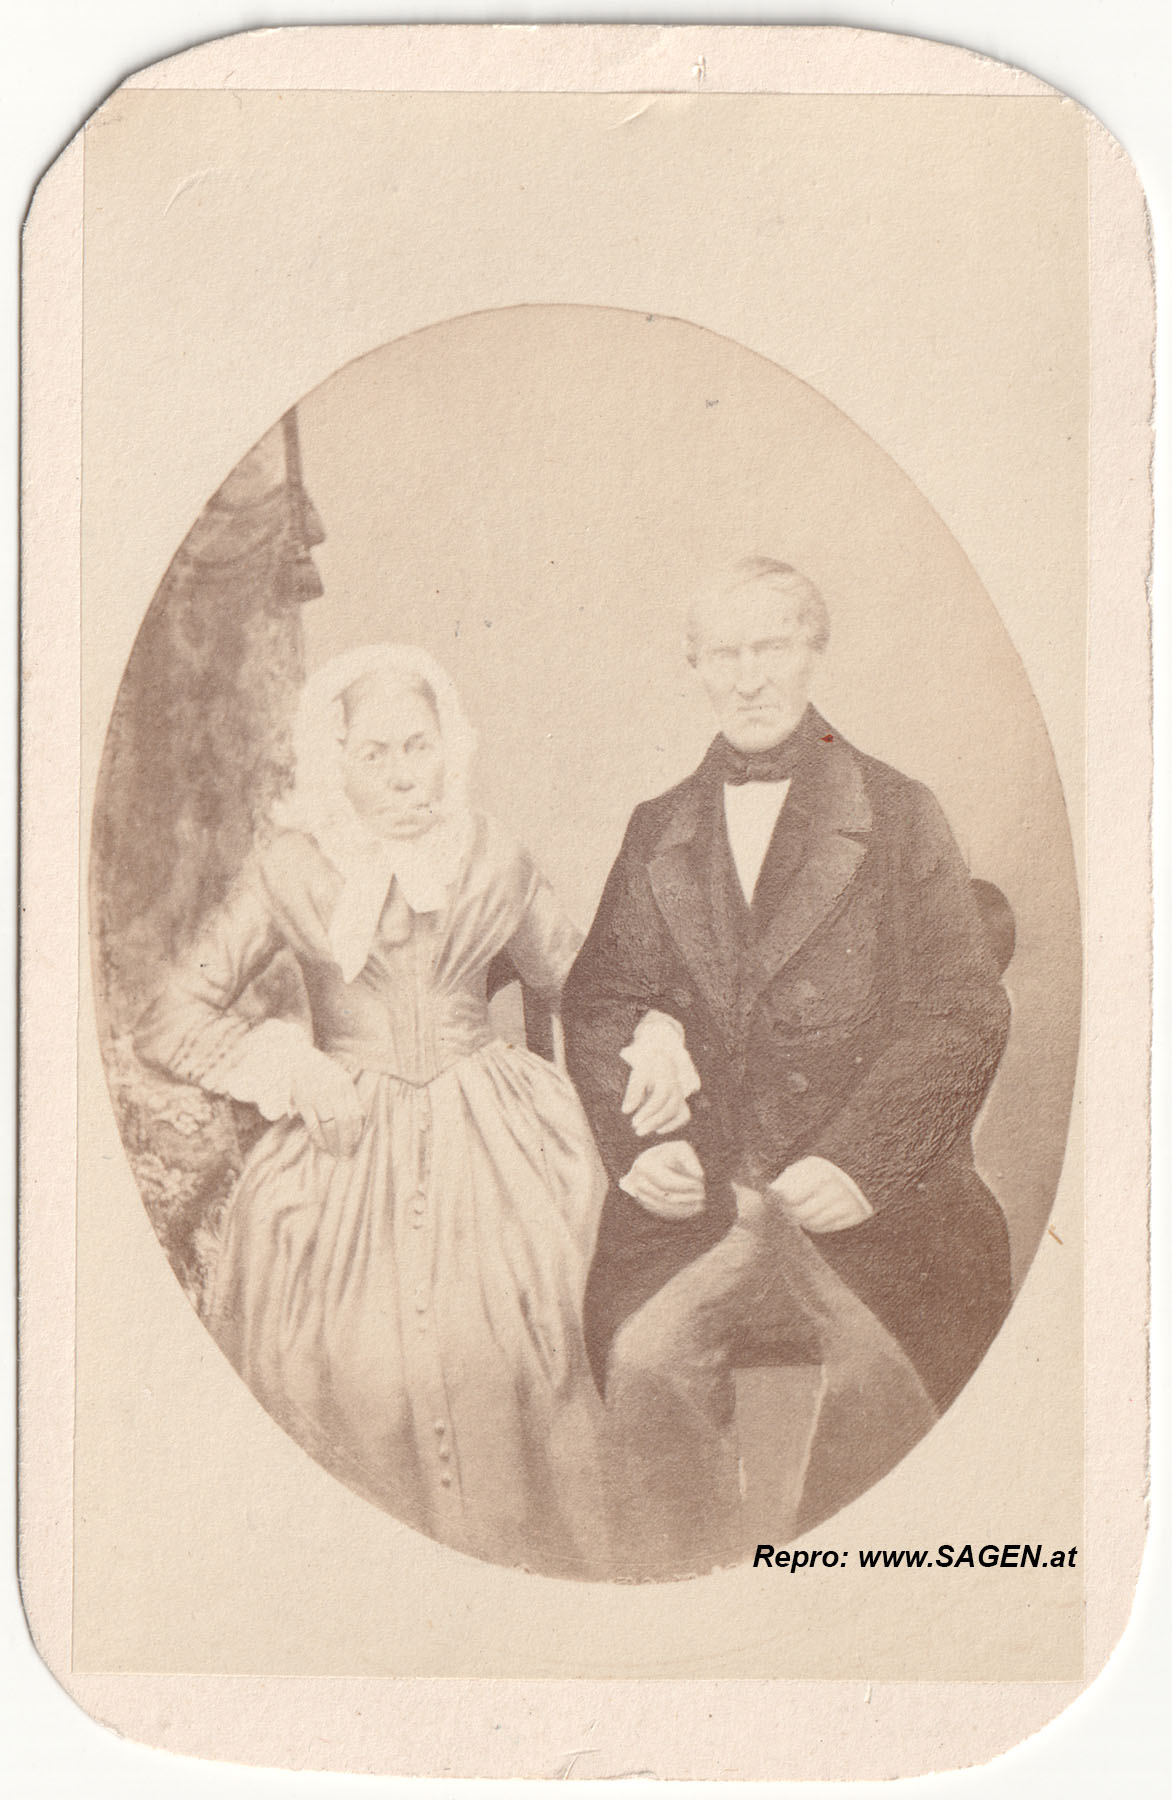 CdV Ehepaar 1860er Jahre